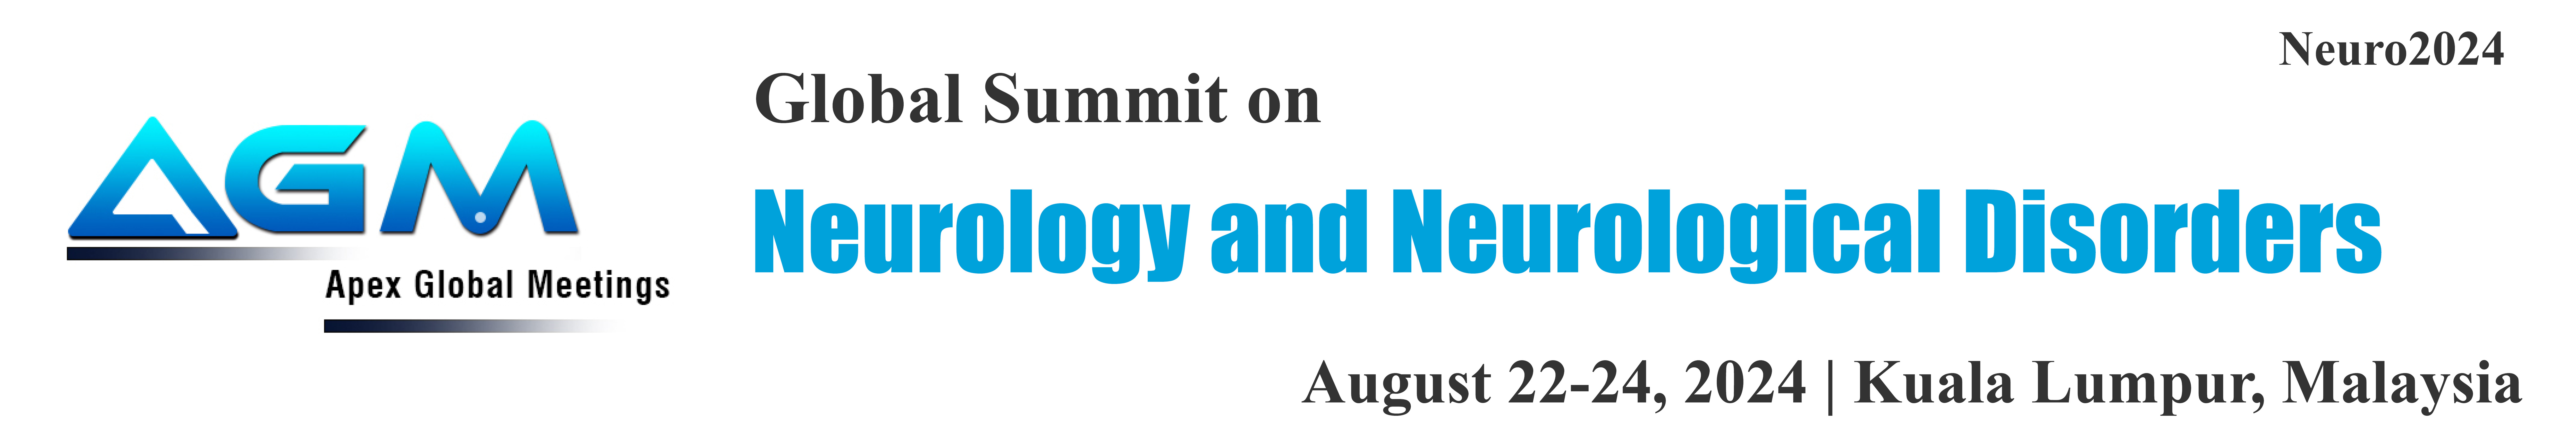 Global Summit on Neurology and Neurological Disorders(Neuro2024)